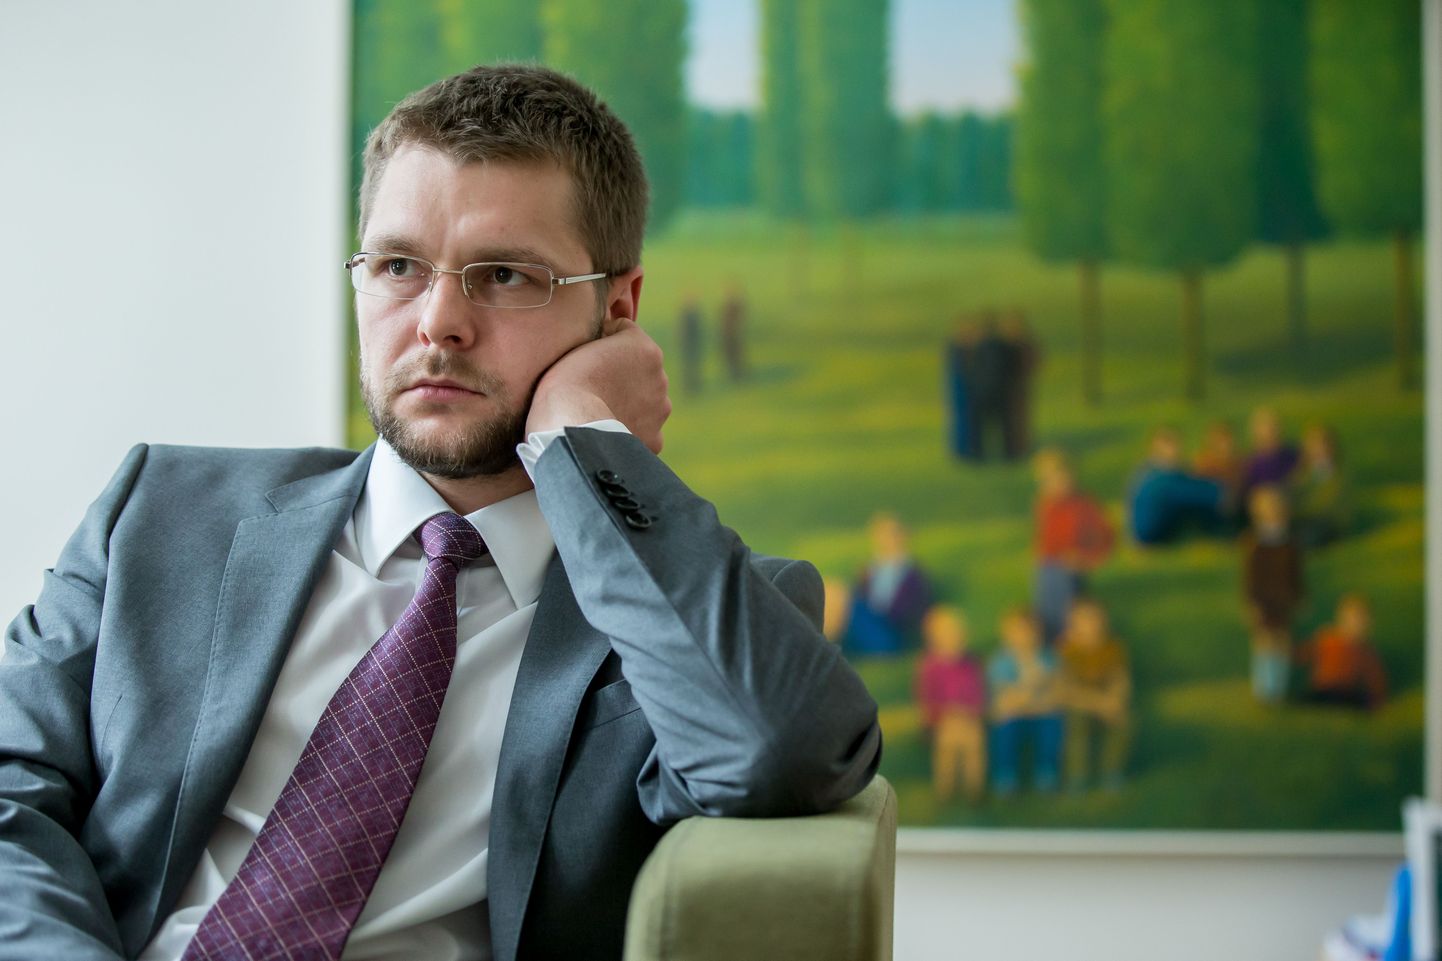 Haridusminister Jevgeni Ossinovski ministeeriumis oma kabinetis Tallinnas Tõnismäel.